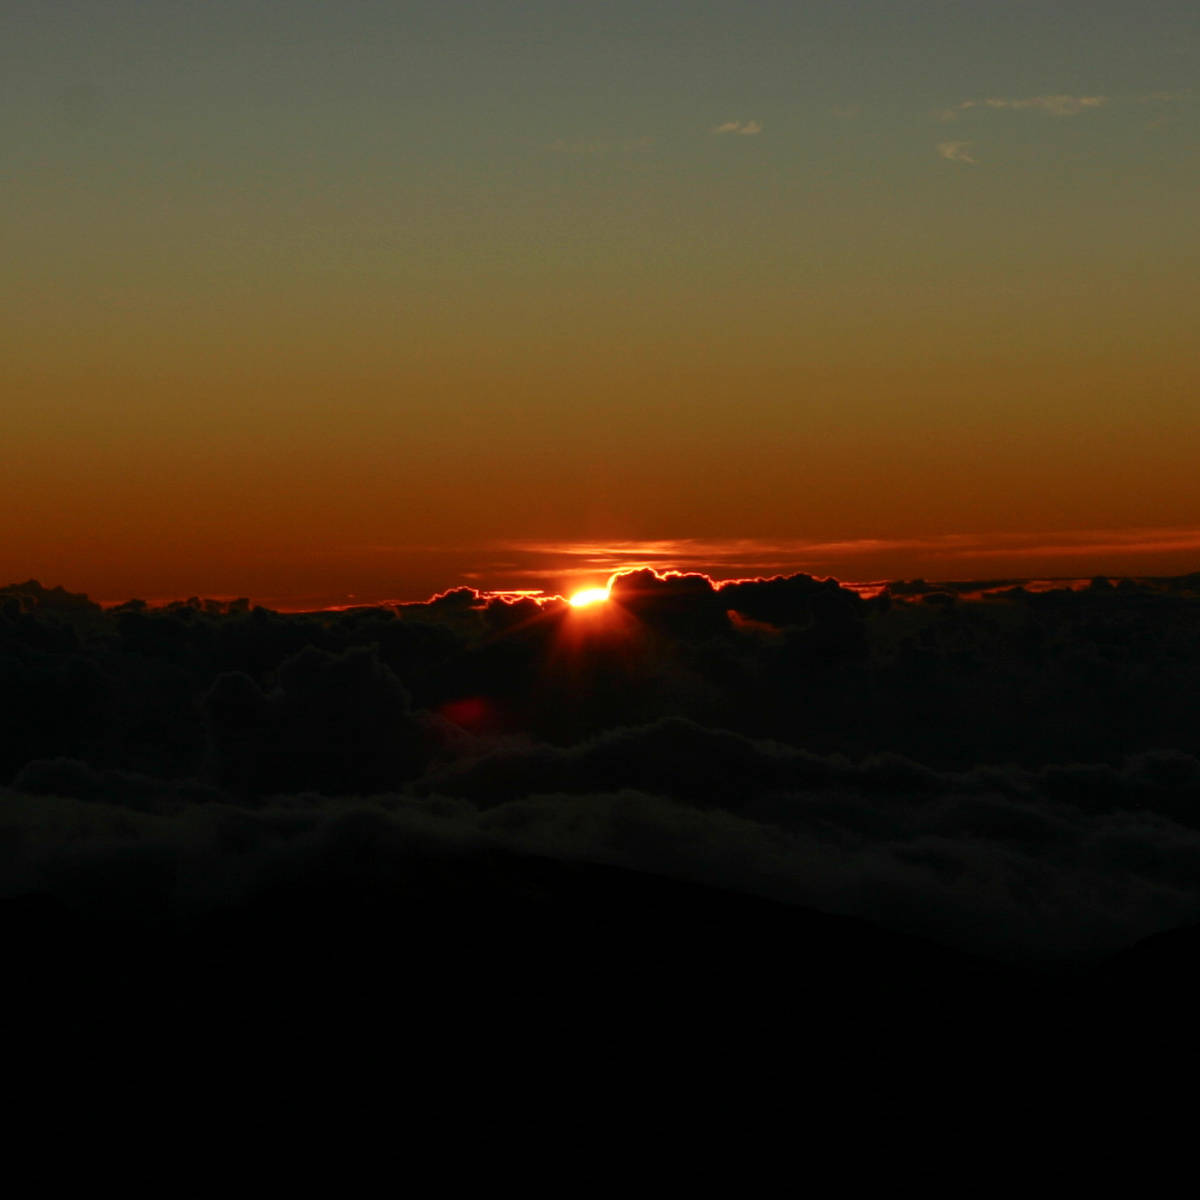 Sunrise at the smmit of Haleakala National Park on Maui Island Hawaii